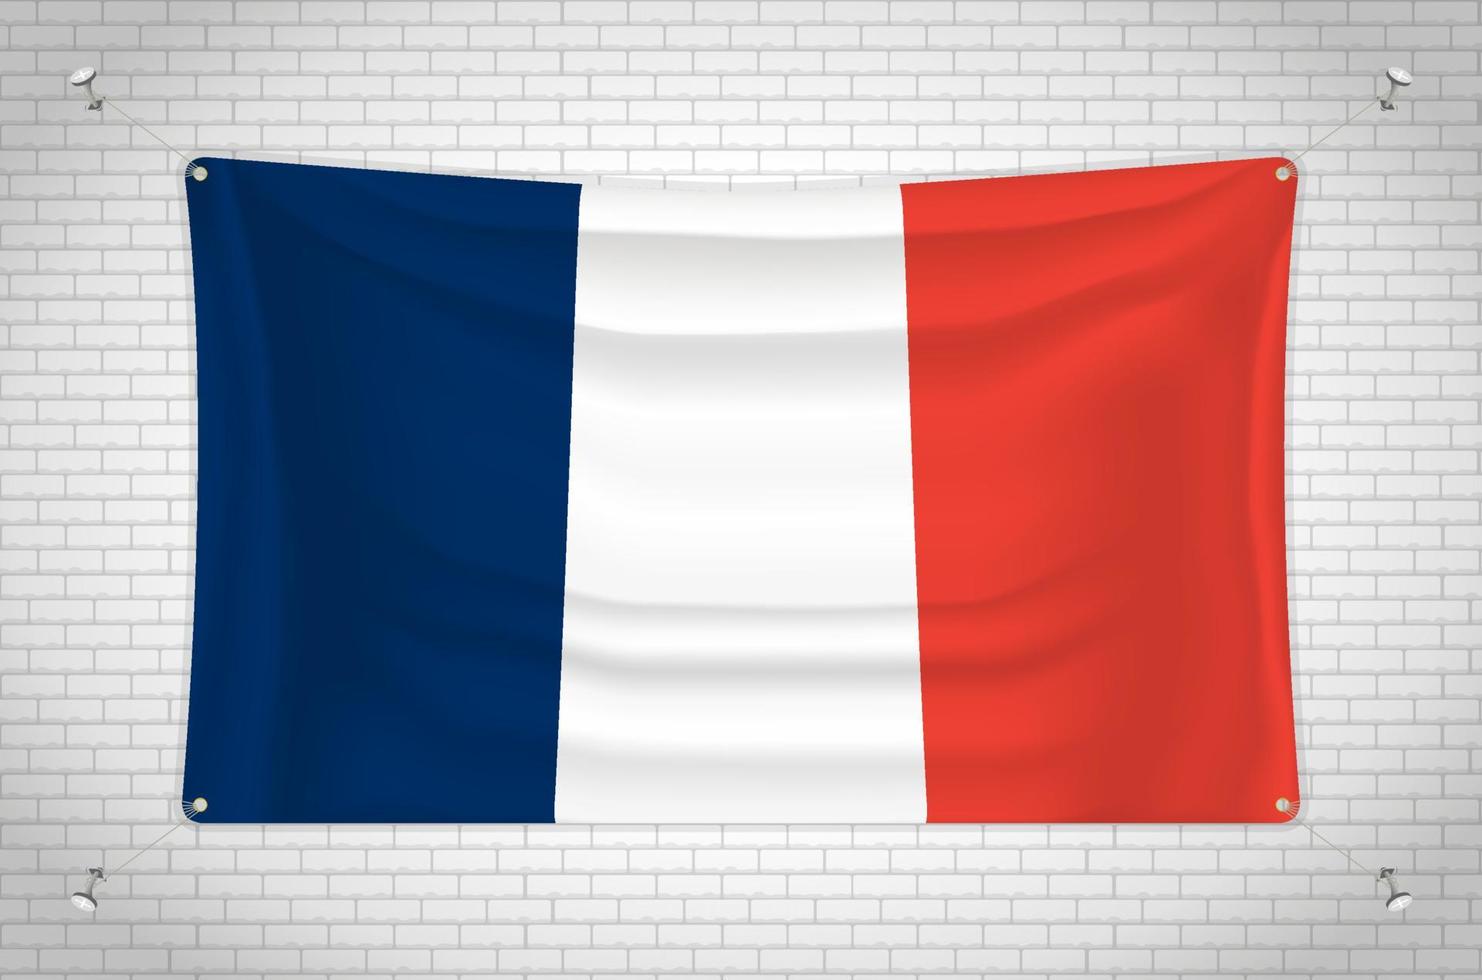 Frankreich-Flagge hängt an der Ziegelwand. 3D-Zeichnung. Fahne an der Wand befestigt. Ordentliches Zeichnen in Gruppen auf separaten Ebenen für eine einfache Bearbeitung. vektor